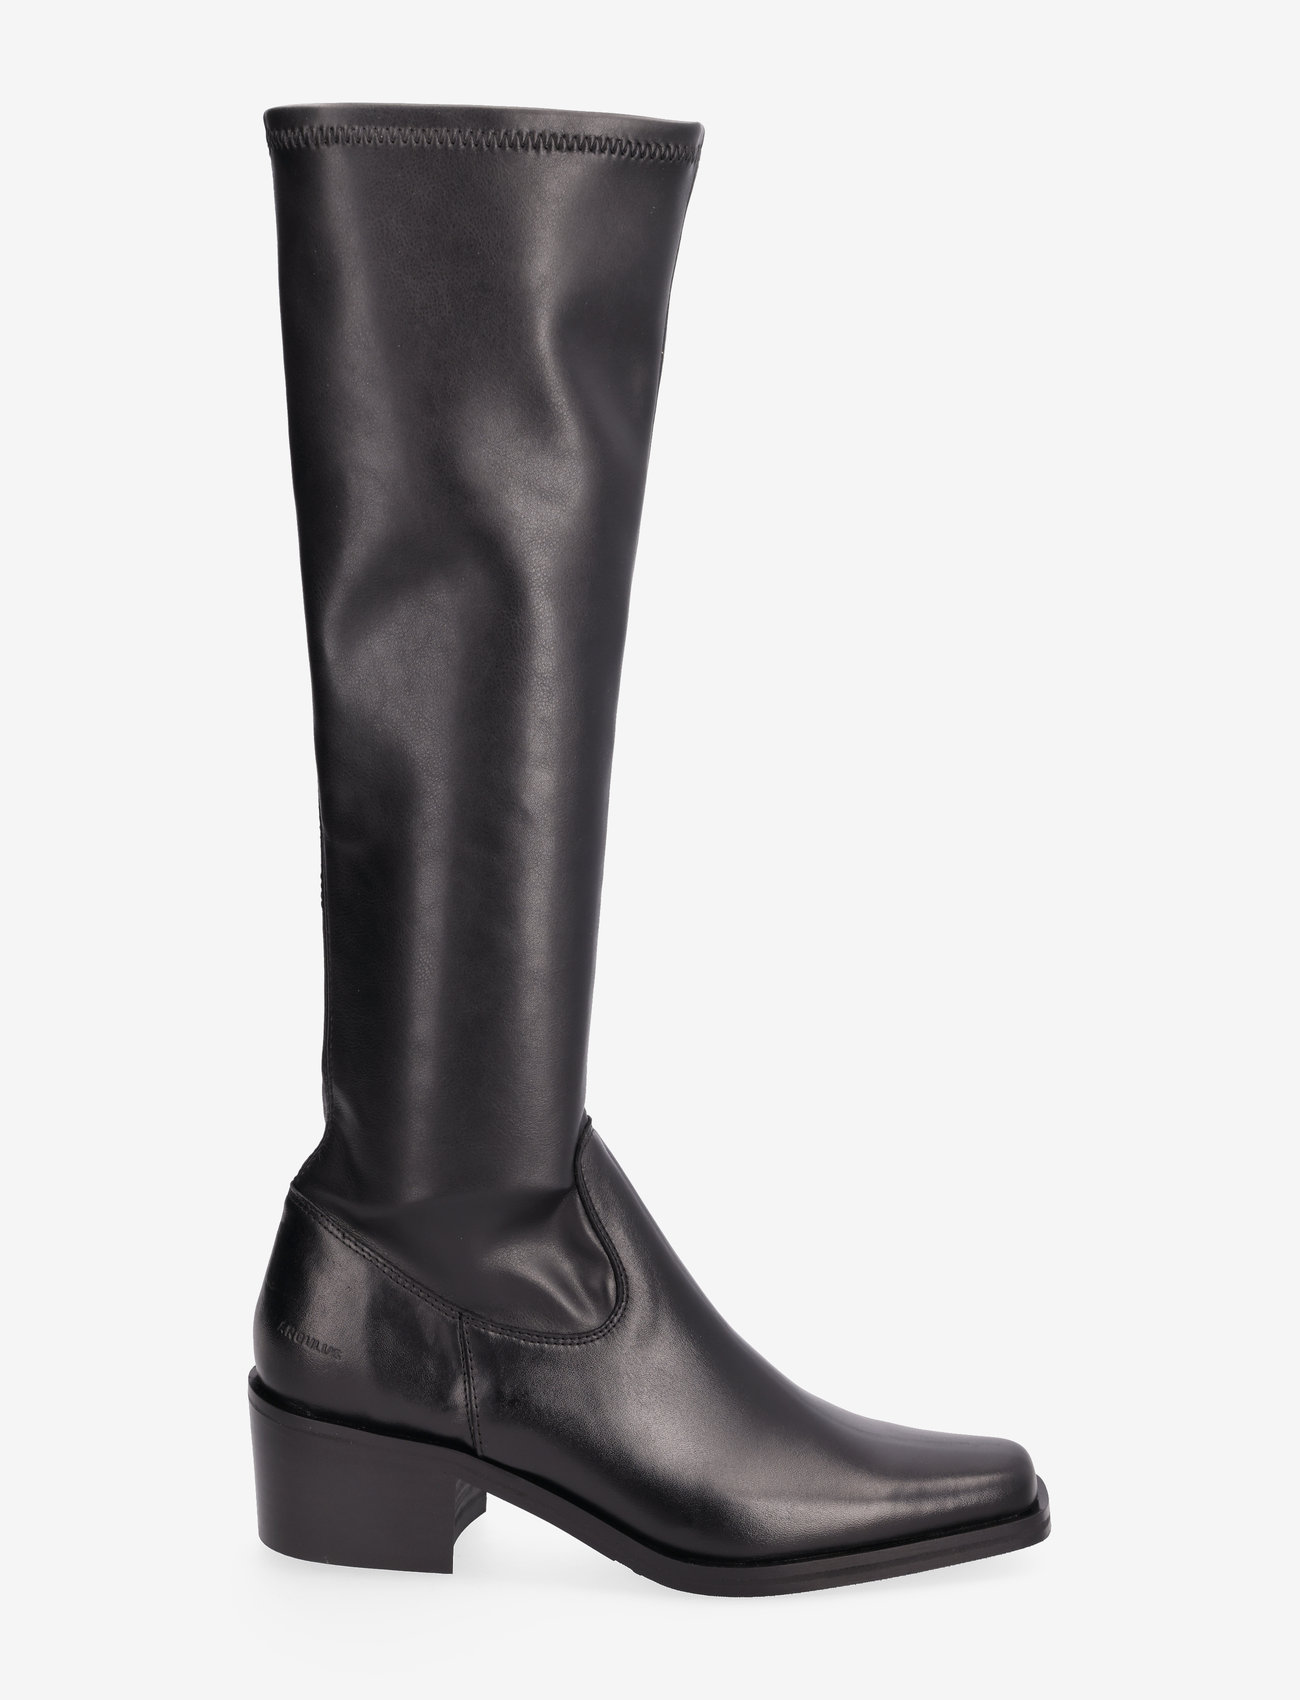 ANGULUS - Boots - Block heel - pitkävartiset saappaat - 1604/1746 black/black - 1